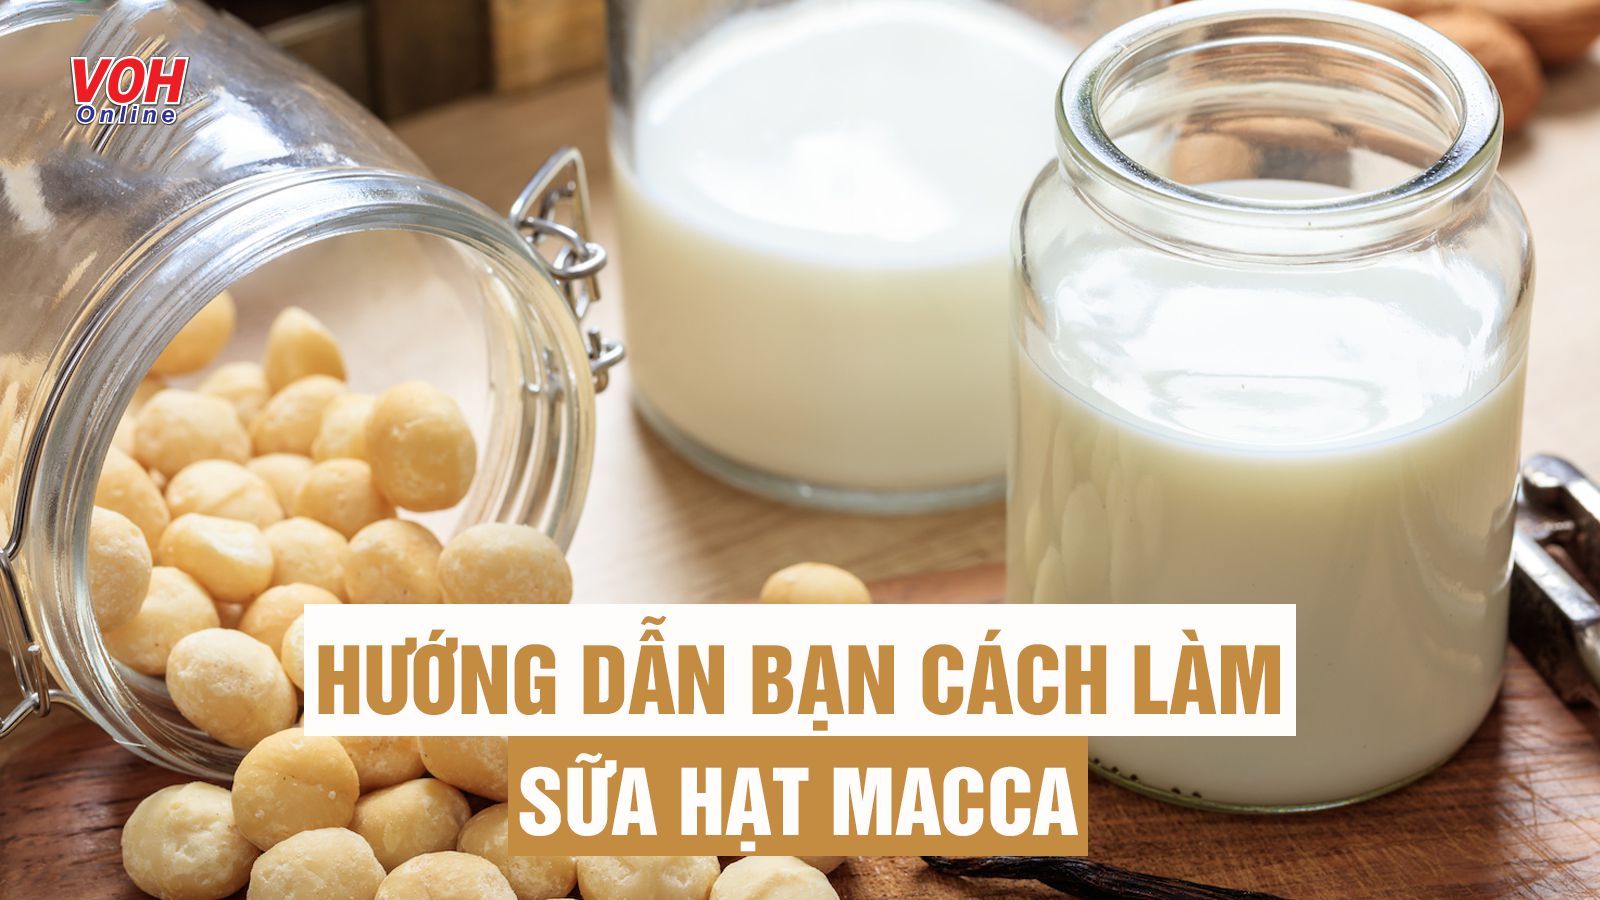 Gợi ý 7 công thức pha chế sữa hạt macca giàu dinh dưỡng, ngọt thơm ‘nức lòng’